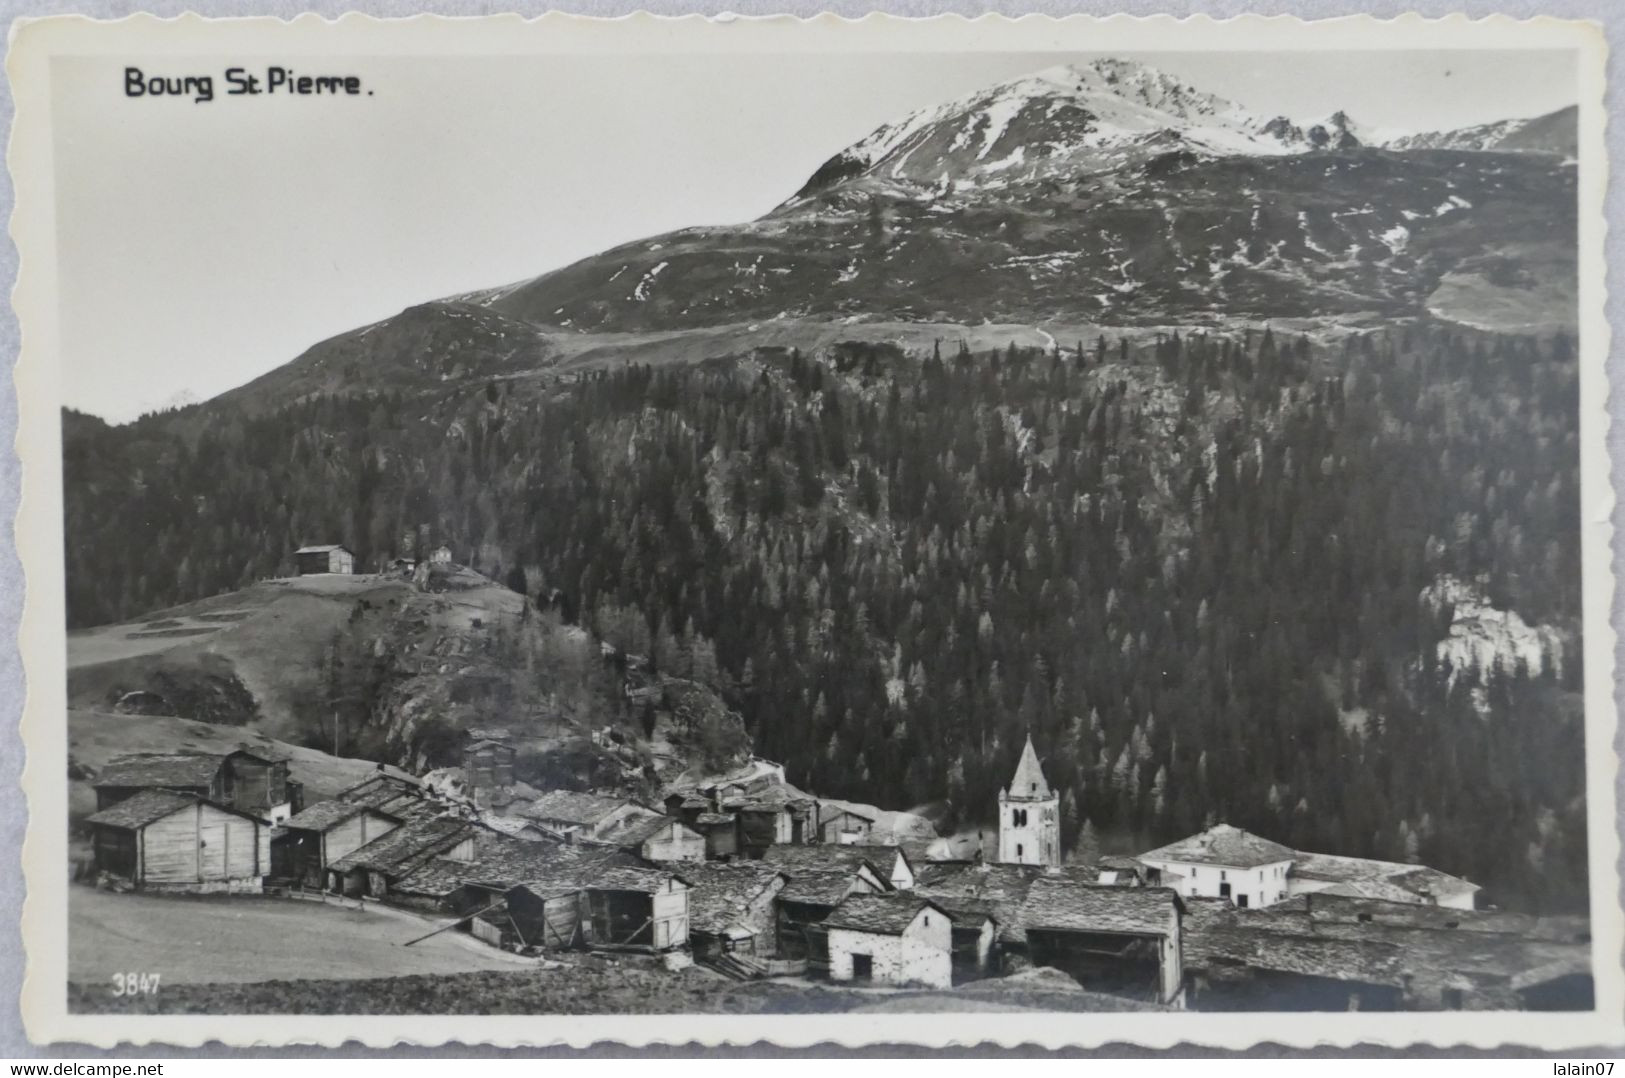 Carte Postale : Suisse : Valais : BOURG SAINT-PIERRE, édition Perrochet, Lausanne - Bourg-Saint-Pierre 